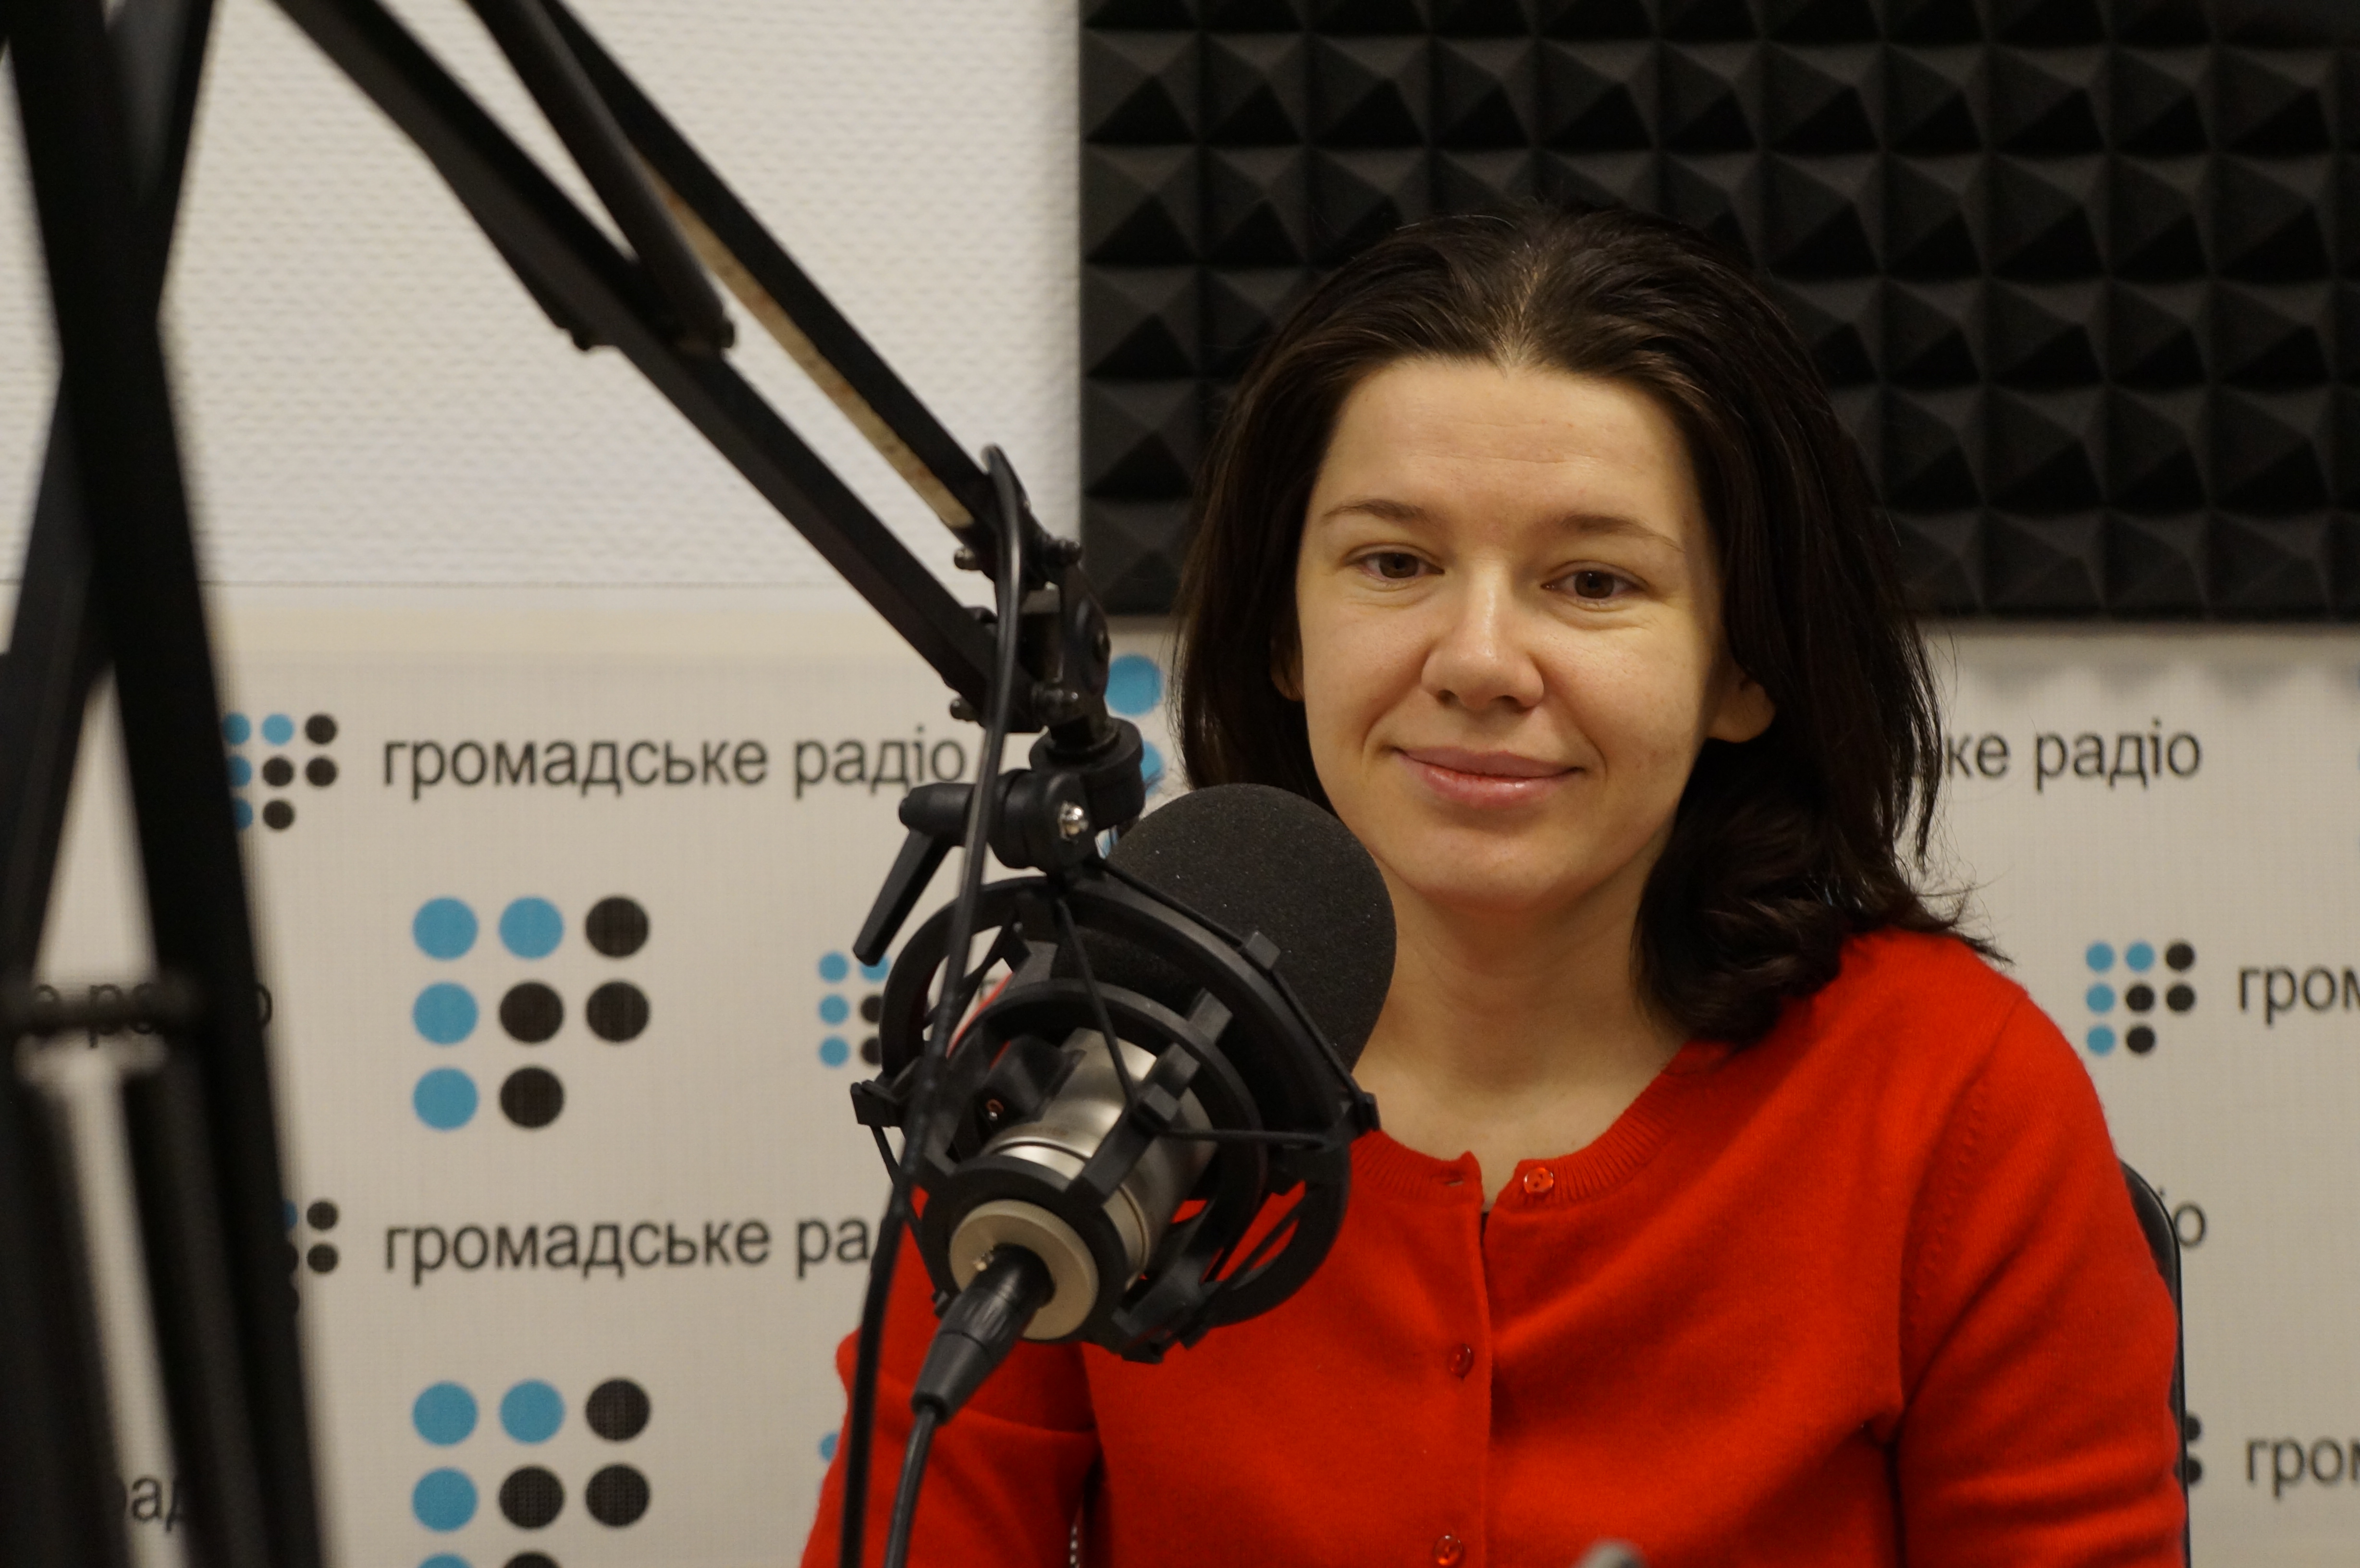 Як випускники українських вишів допомагають своїм Alma mater?